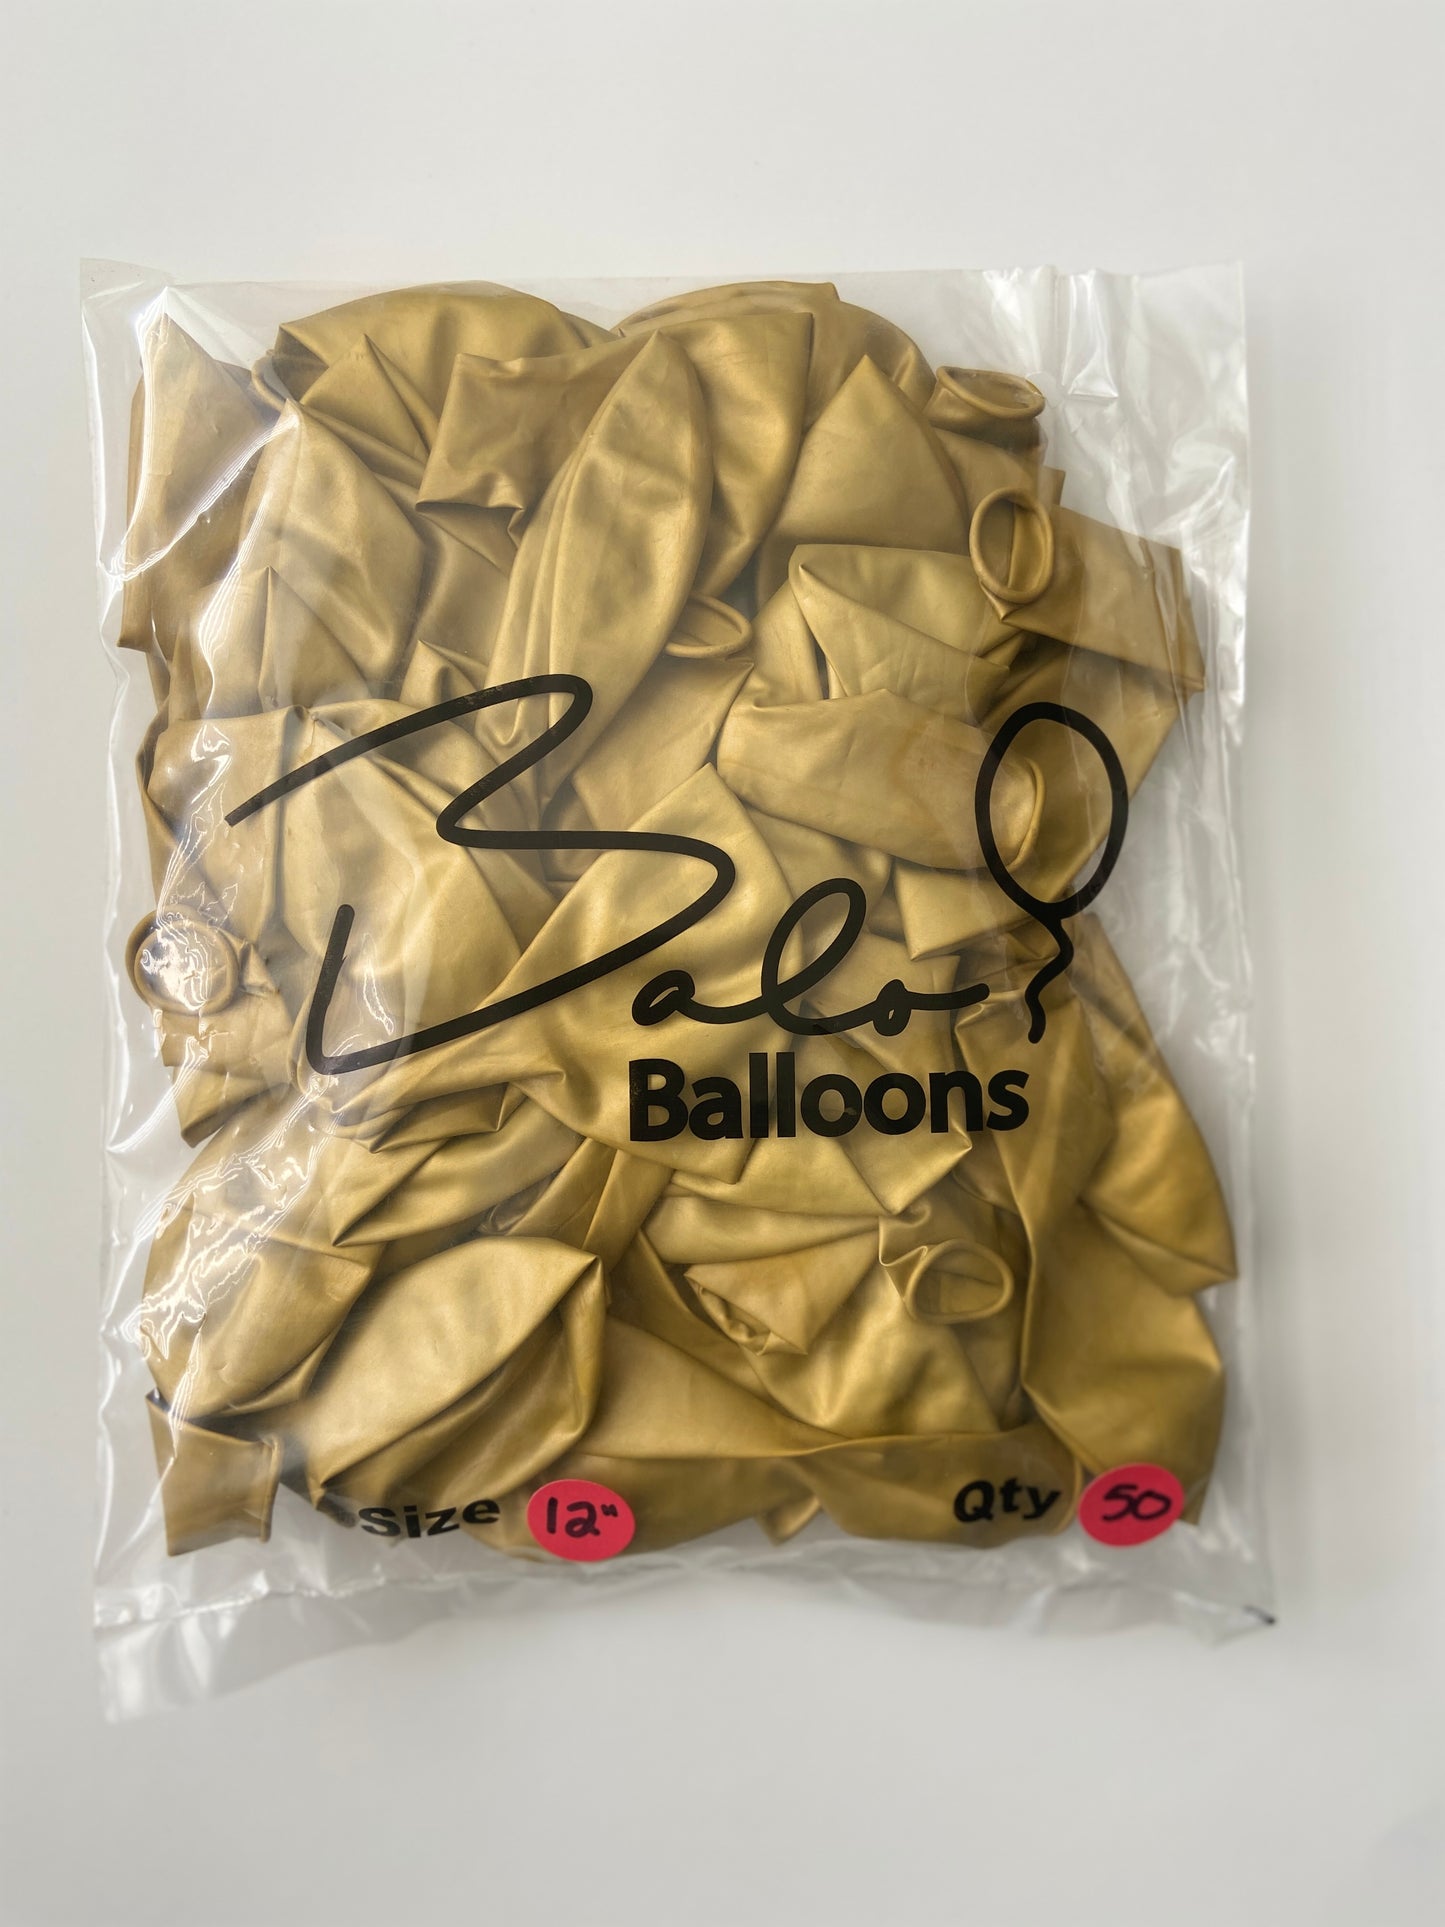 Chrome Gold  Latex Balloon 12"